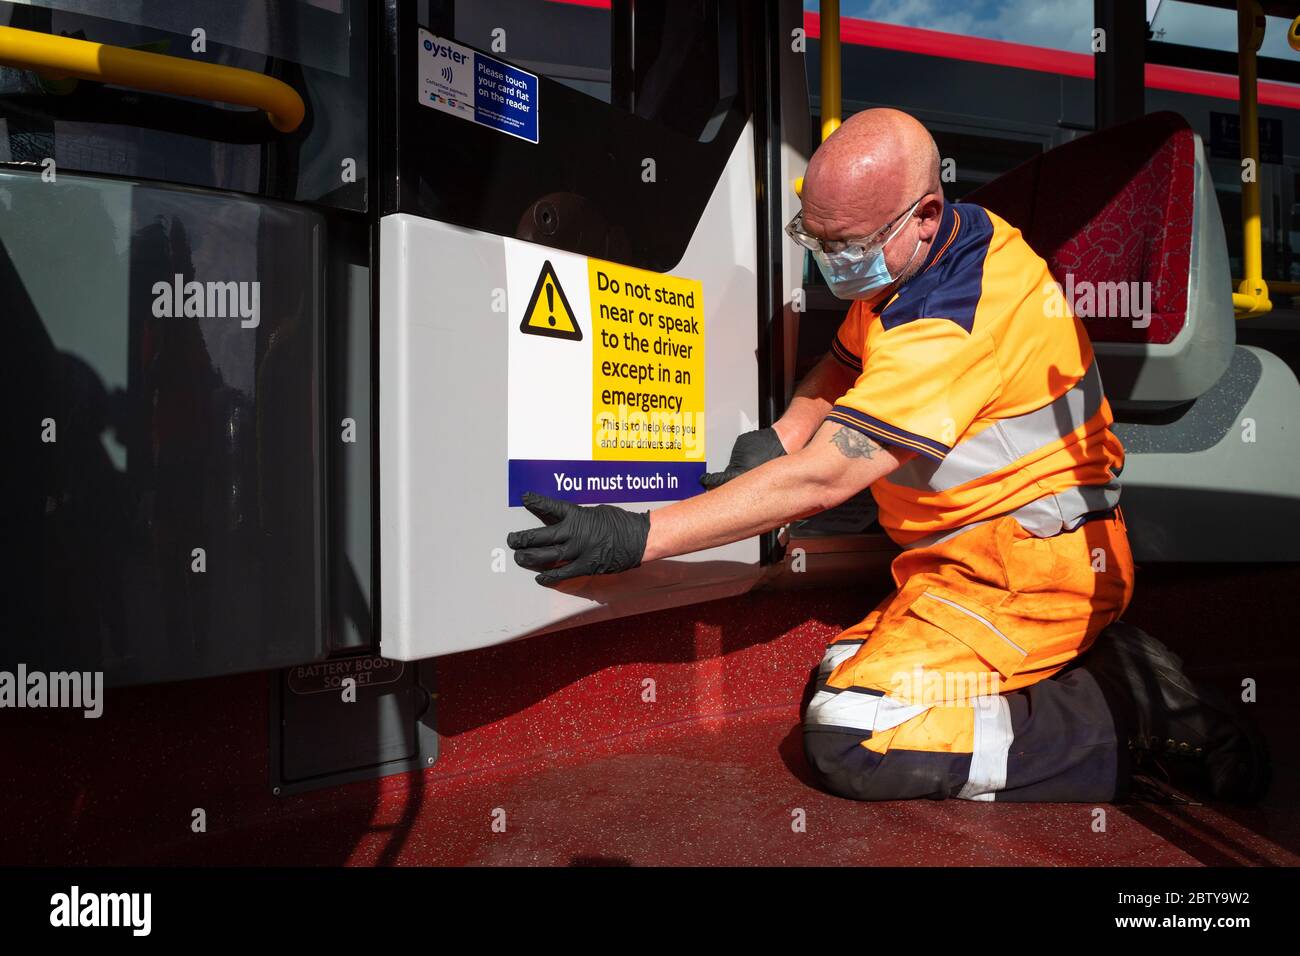 Le personnel de l'autobus pose des autocollants sur un autobus dans le garage de l'autobus de Twickenham pour rappeler aux clients que les tarifs sont en vigueur sur l'itinéraire, pendant le pandemi COVID-19 Banque D'Images